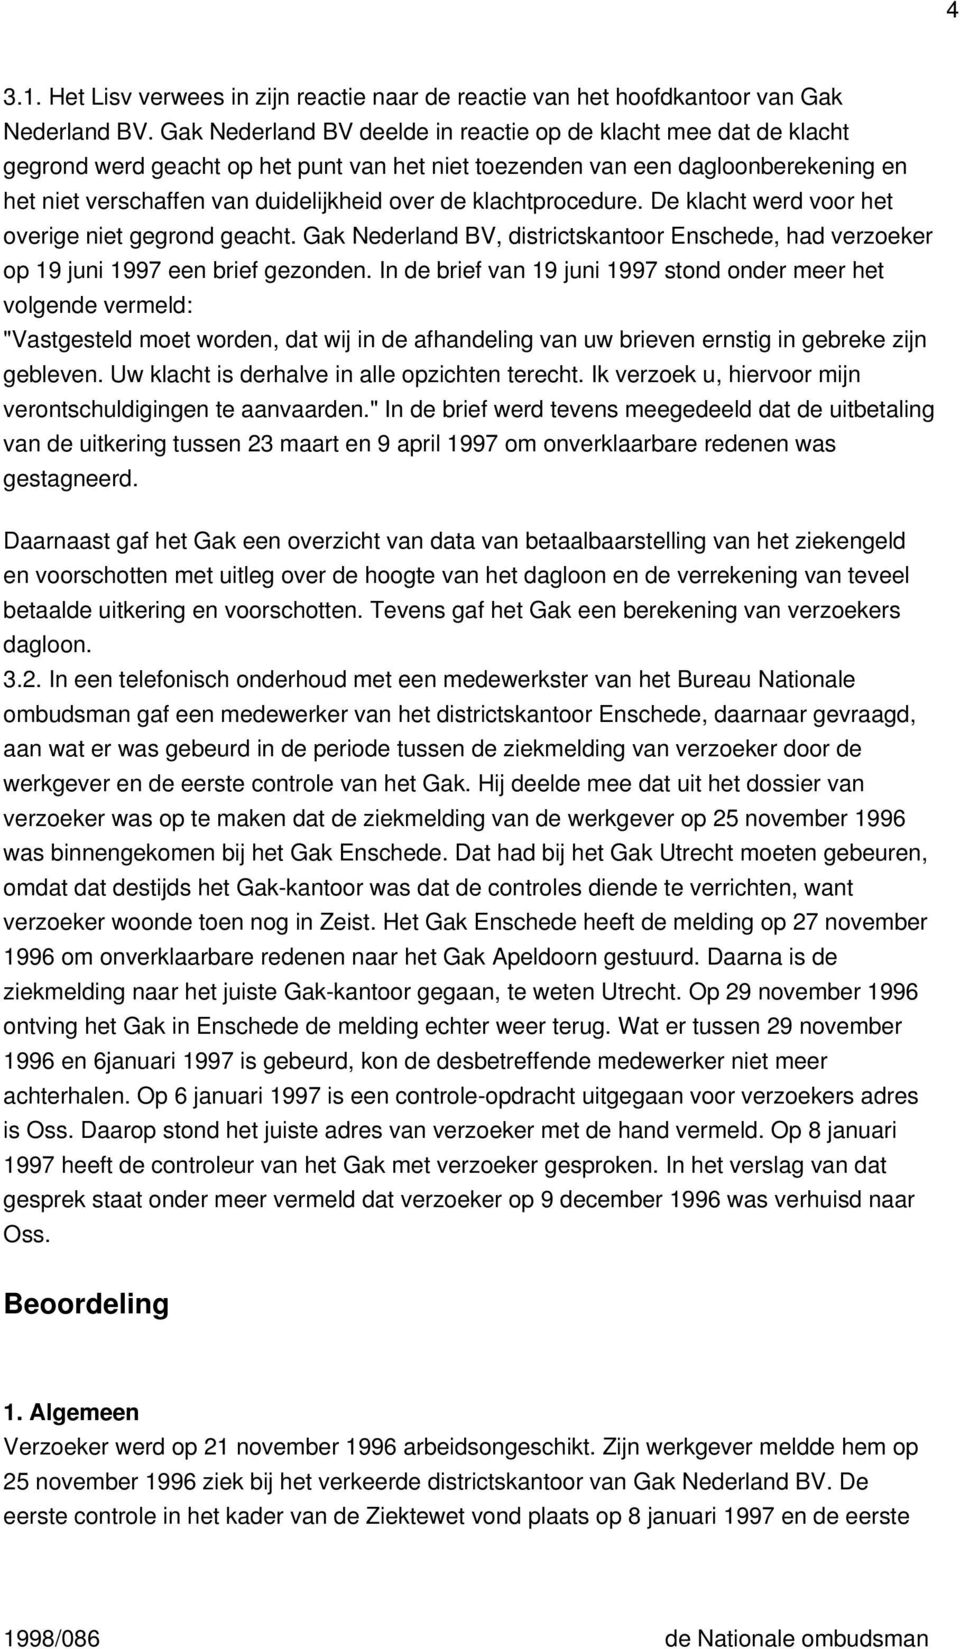 klachtprocedure. De klacht werd voor het overige niet gegrond geacht. Gak Nederland BV, districtskantoor Enschede, had verzoeker op 19 juni 1997 een brief gezonden.